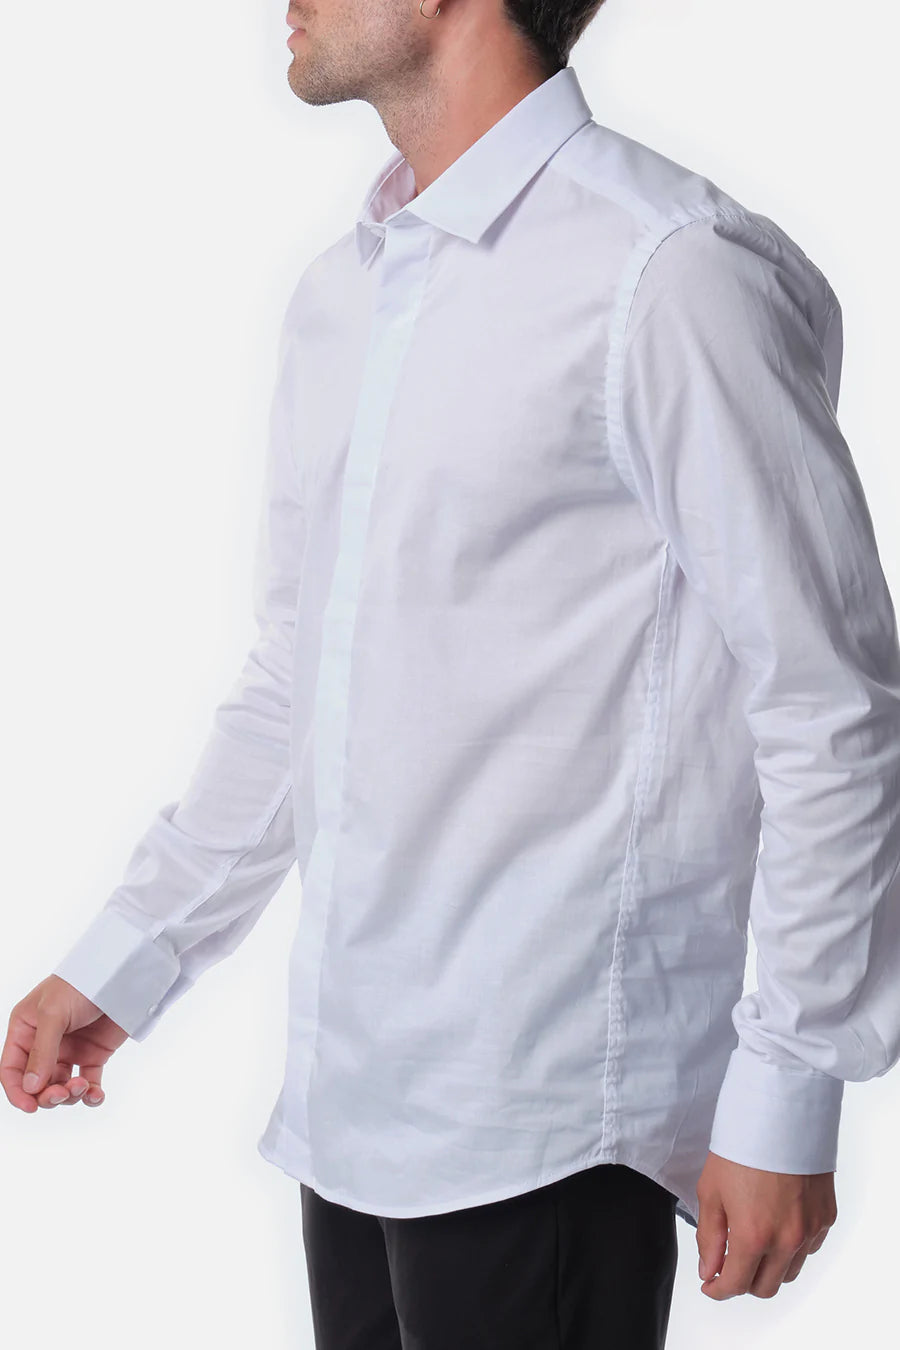 Ανδρικό πουκάμισο Konrad, Λευκό 3